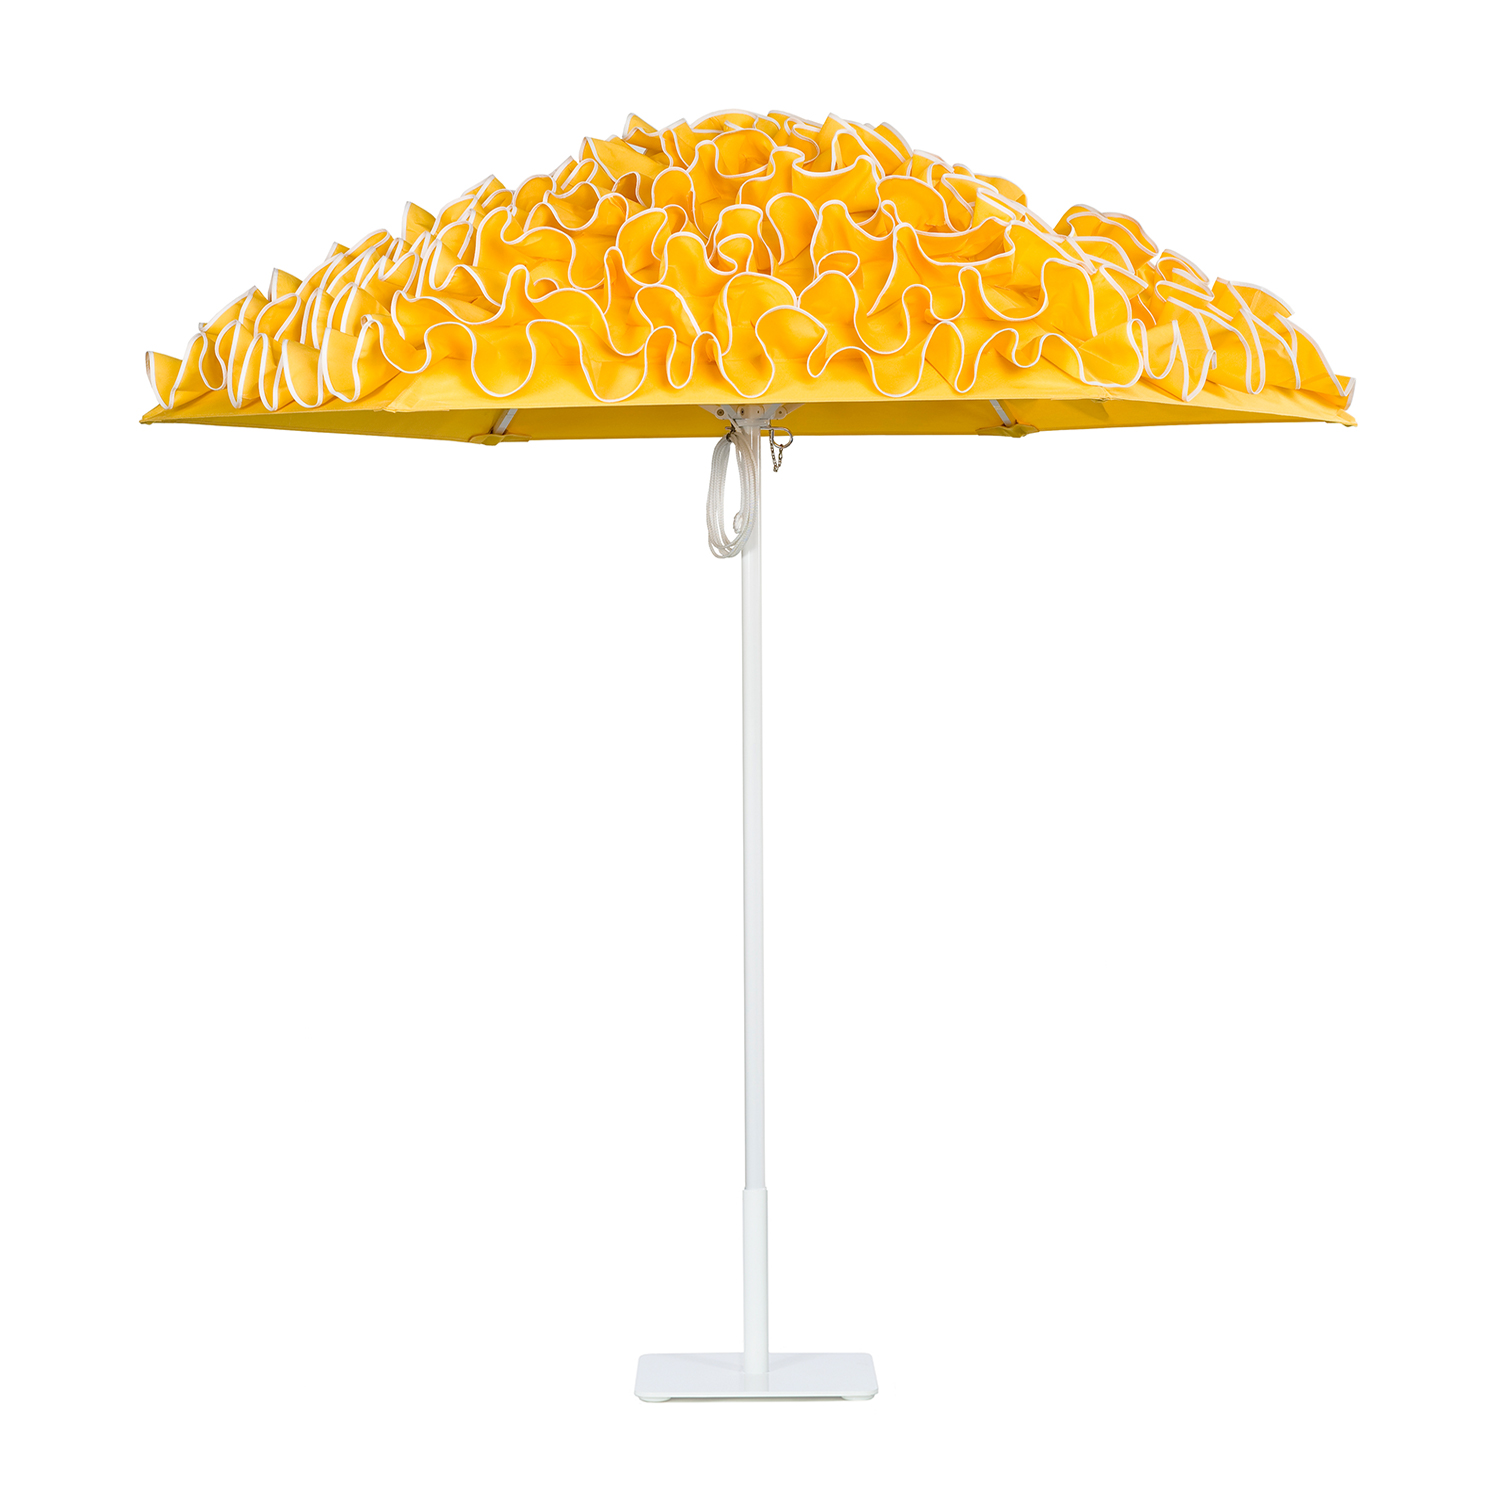 Image of Flamenco aluminum umbrella